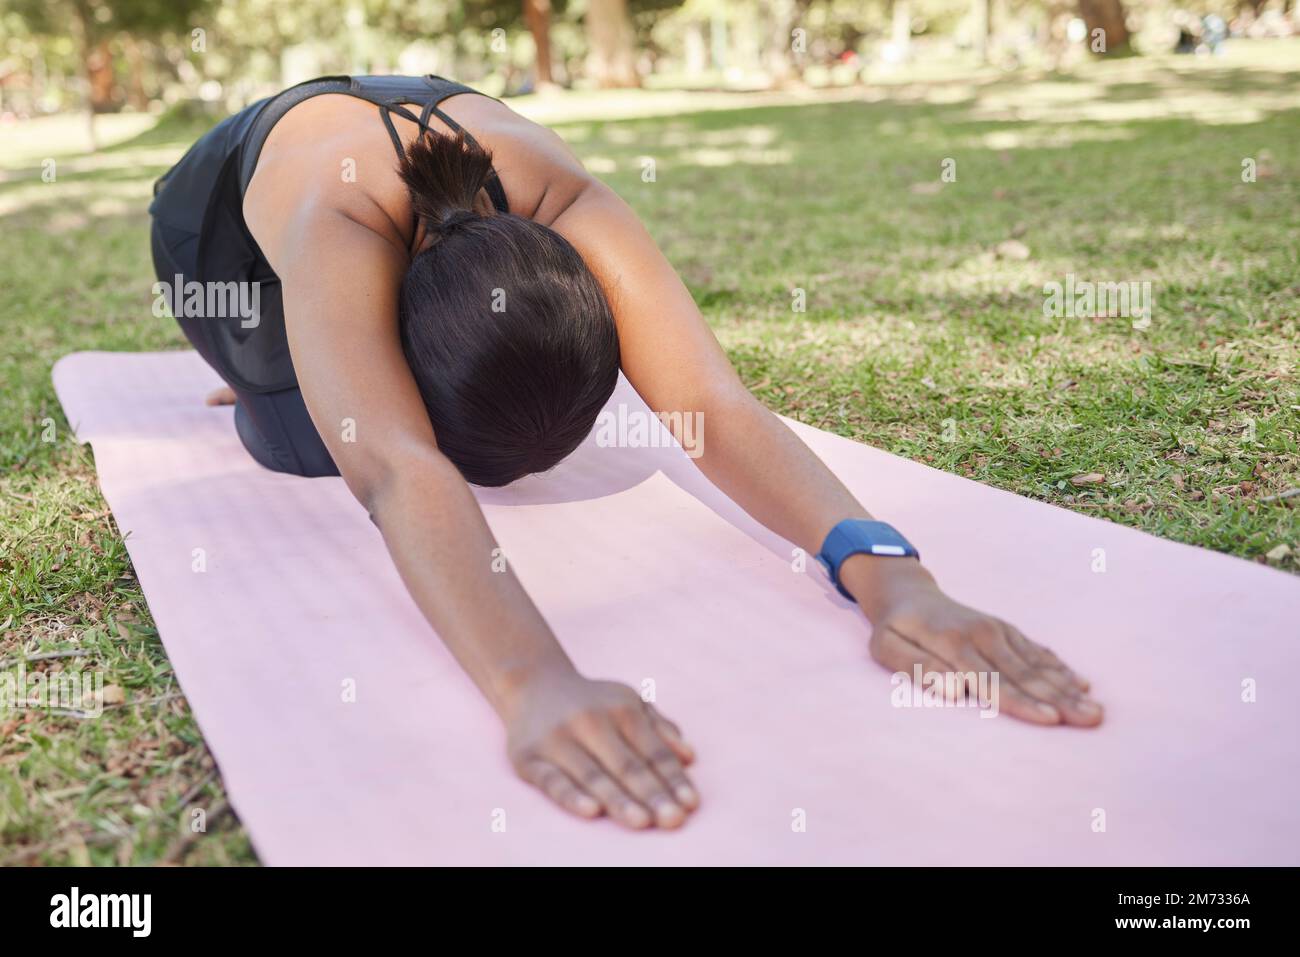 Schwarze Frau, Stretching oder Naturpark Yoga auf Matte in für Zen Gesundheit Wellness, Entspannungsübung oder Training Friedenstraining. Kinder-Pose, Fitness-Yoga Stockfoto